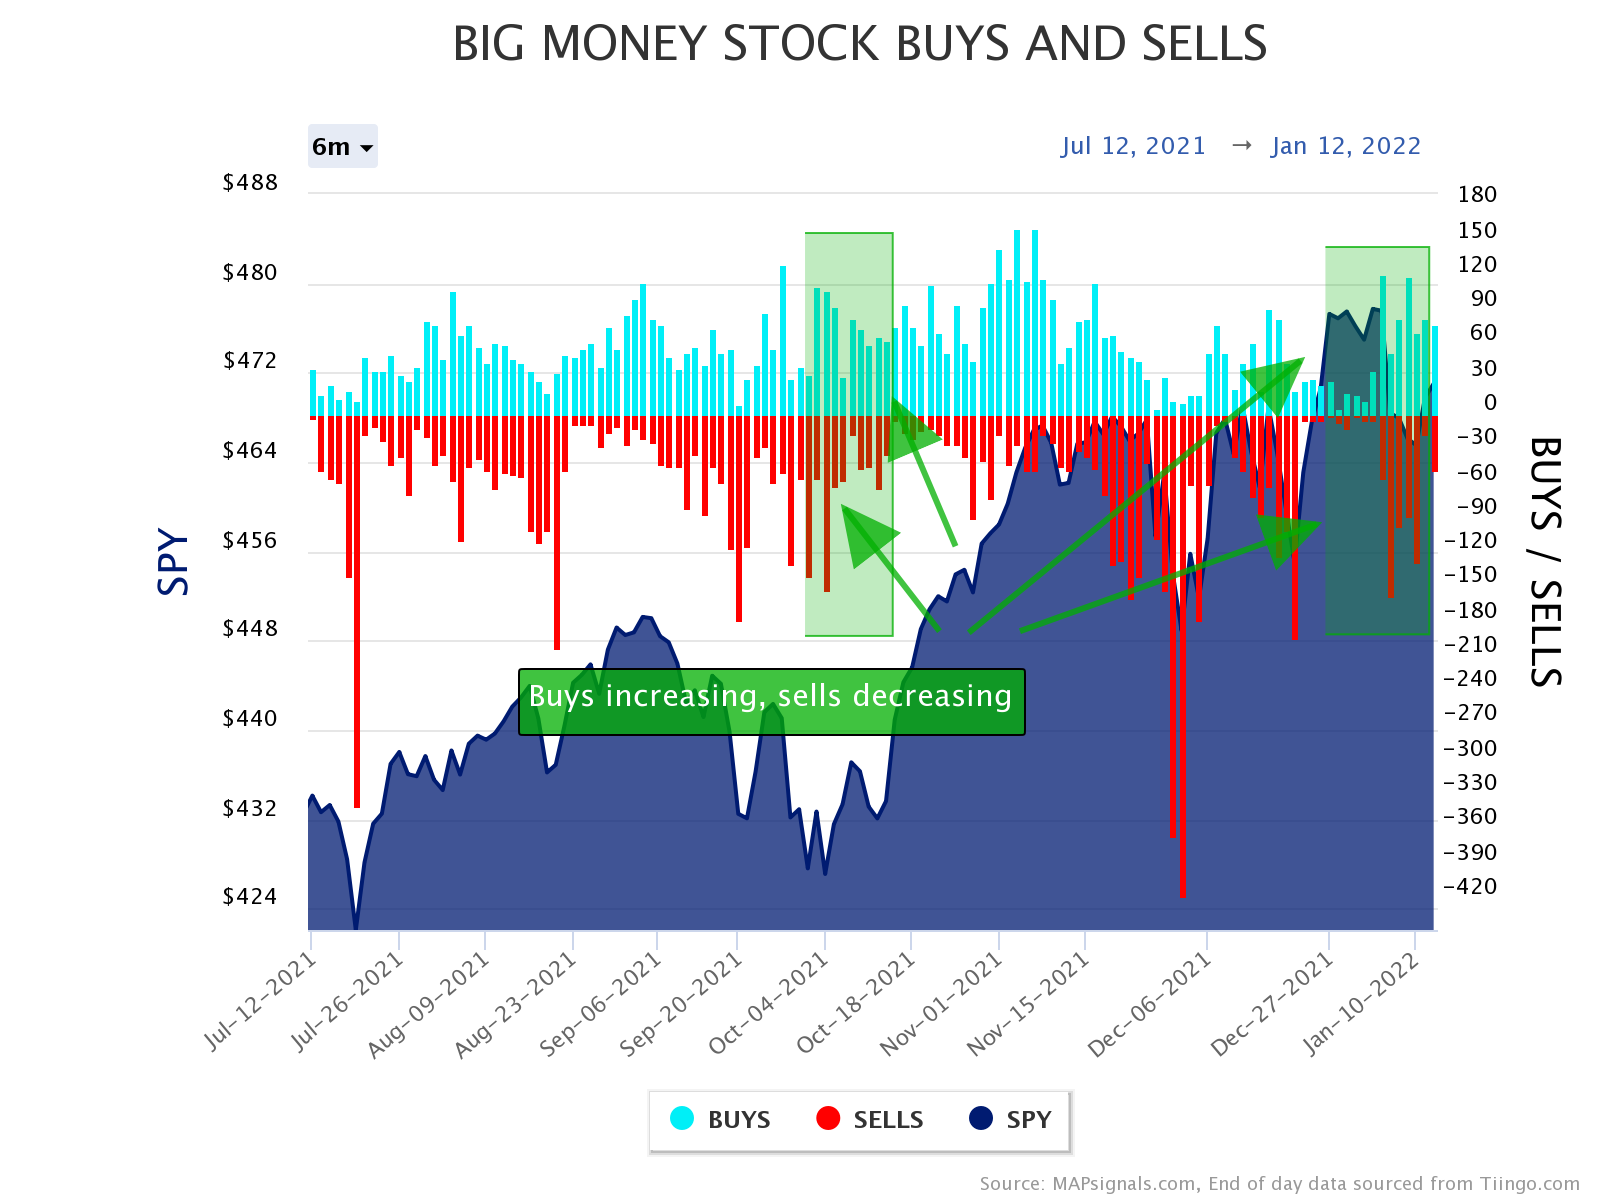 BMI stock buys increasing, sells decreasing